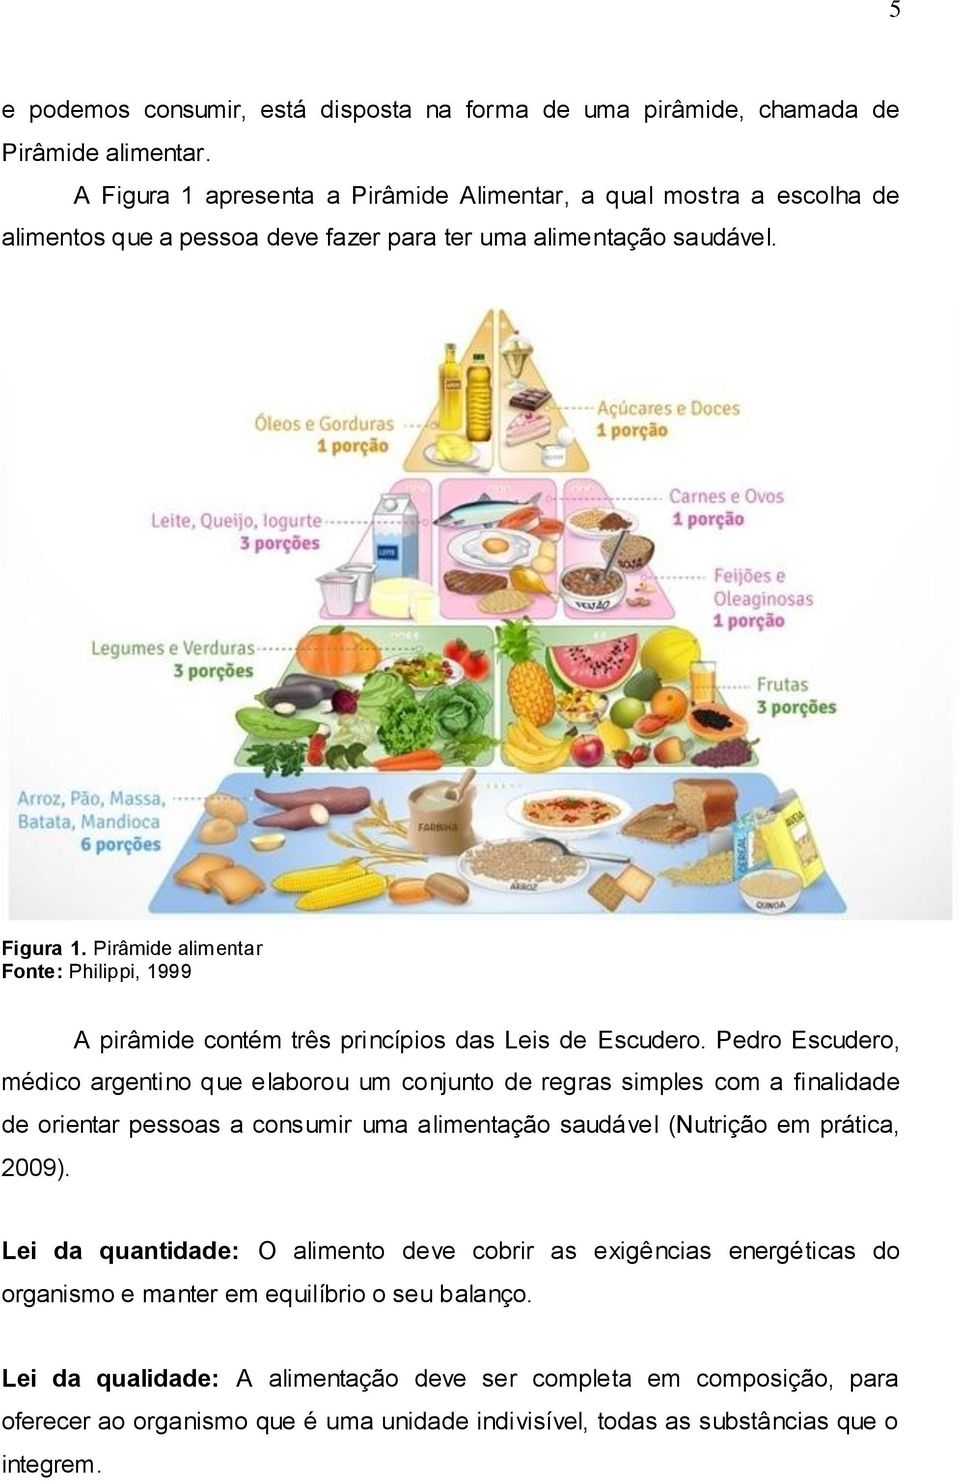 Pedro Escudero, médico argentino que elaborou um conjunto de regras simples com a finalidade de orientar pessoas a consumir uma alimentação saudável (Nutrição em prática, 2009).